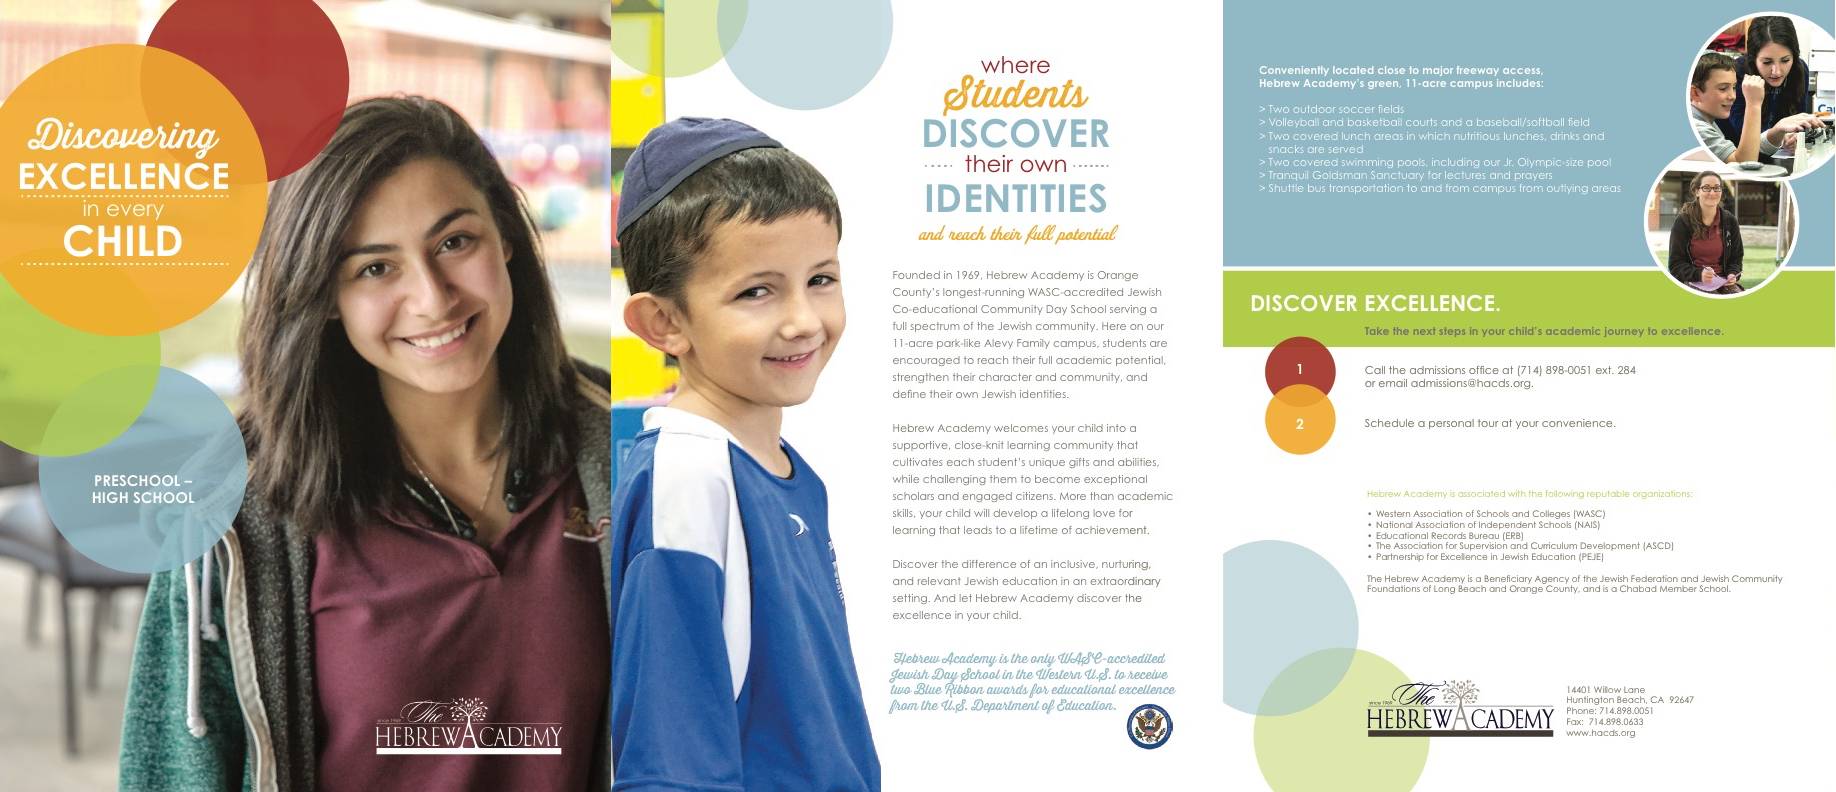 The Hebrew Academy brochure